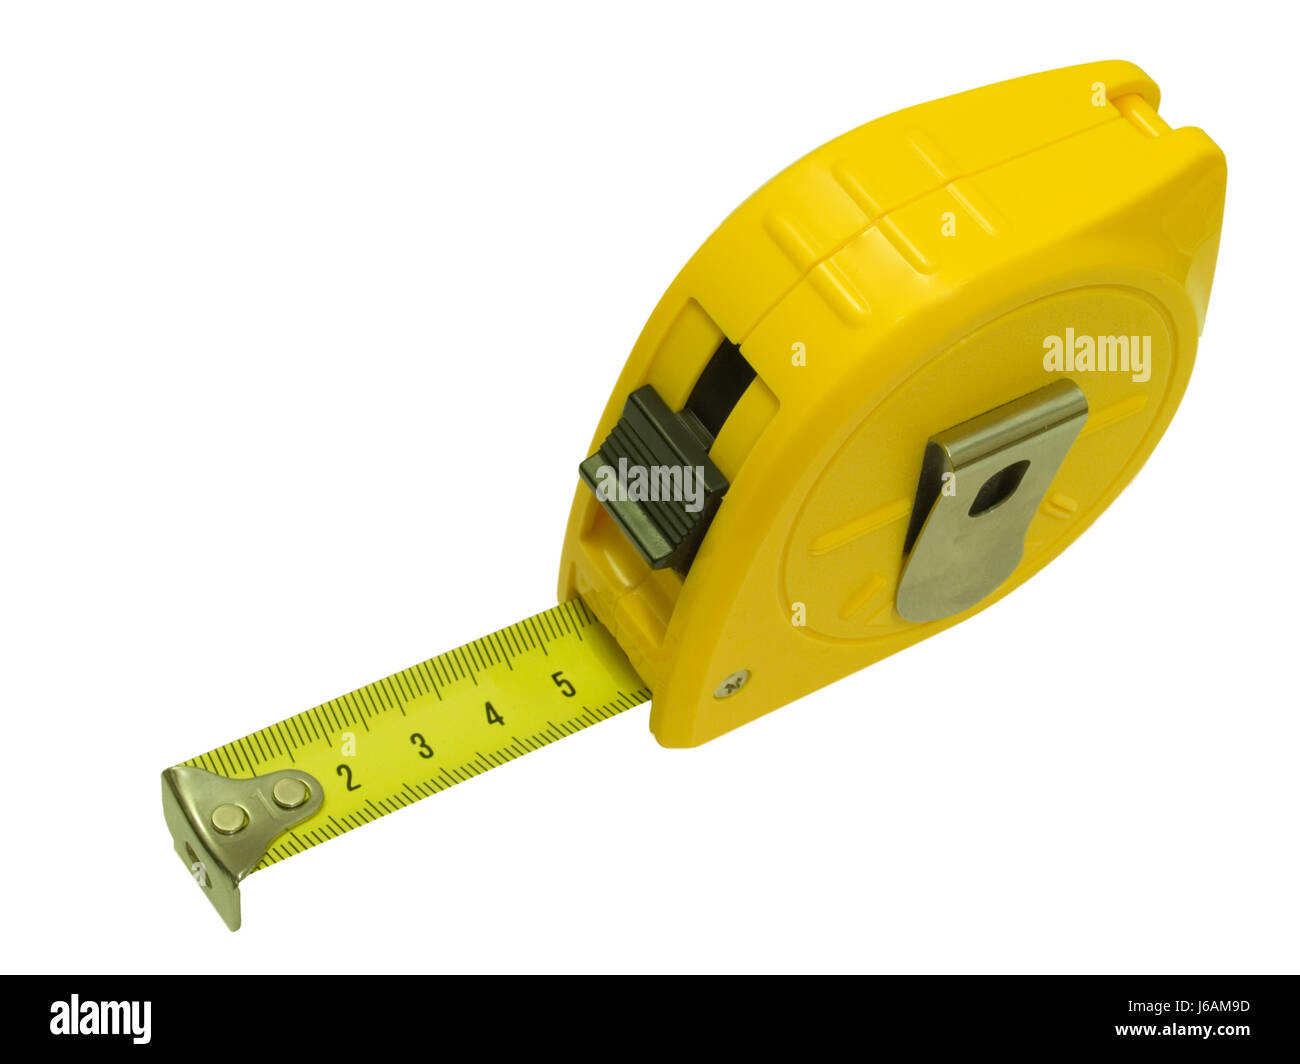 Ingeniería aislado mide la precisión de medida sured arquitecto instrumento cinta Foto de stock